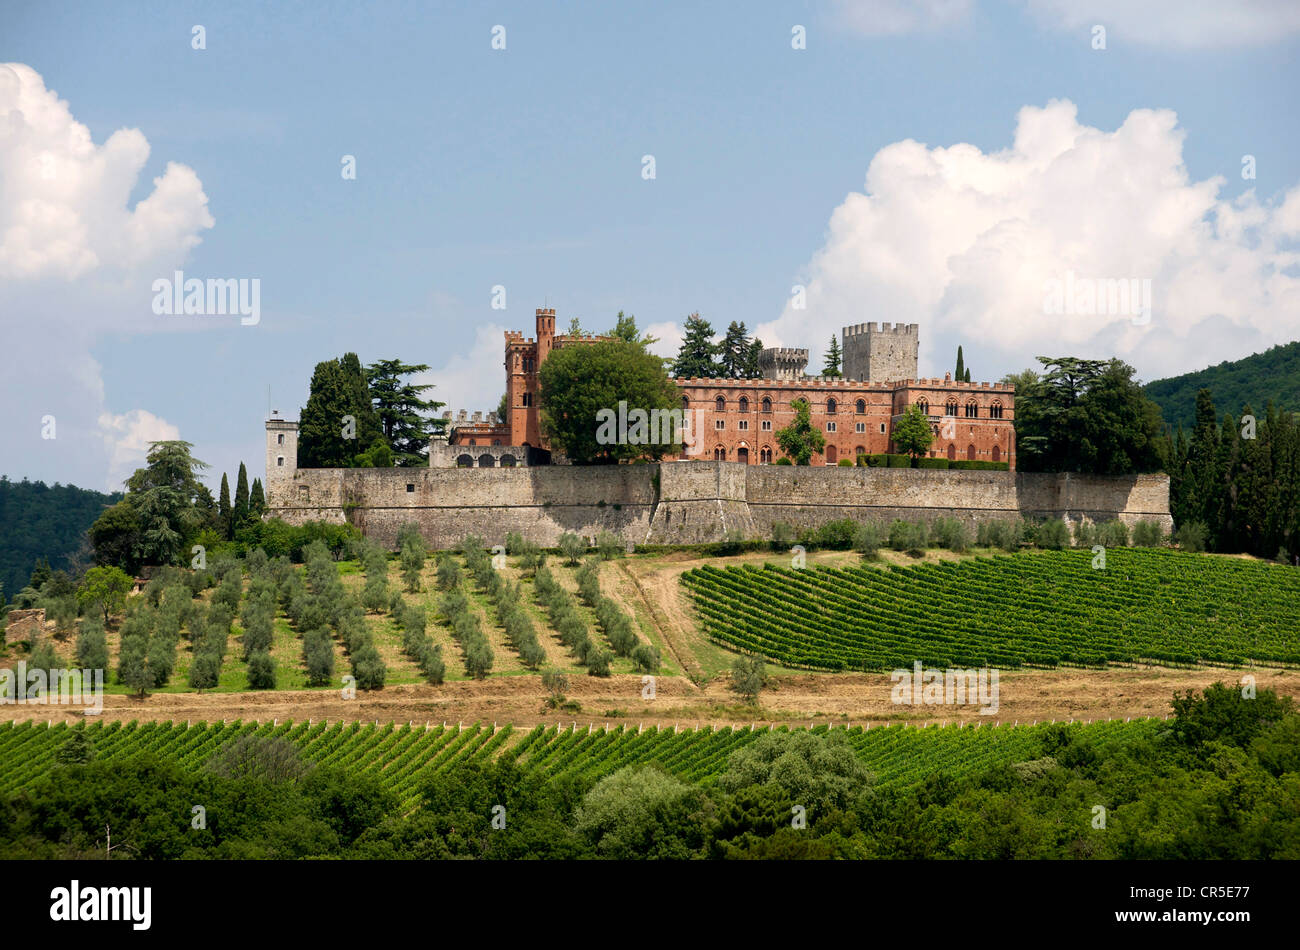 Italy, Tuscany, Chianti Wine producing area, Castello di Brolio Wine producing domain Stock Photo